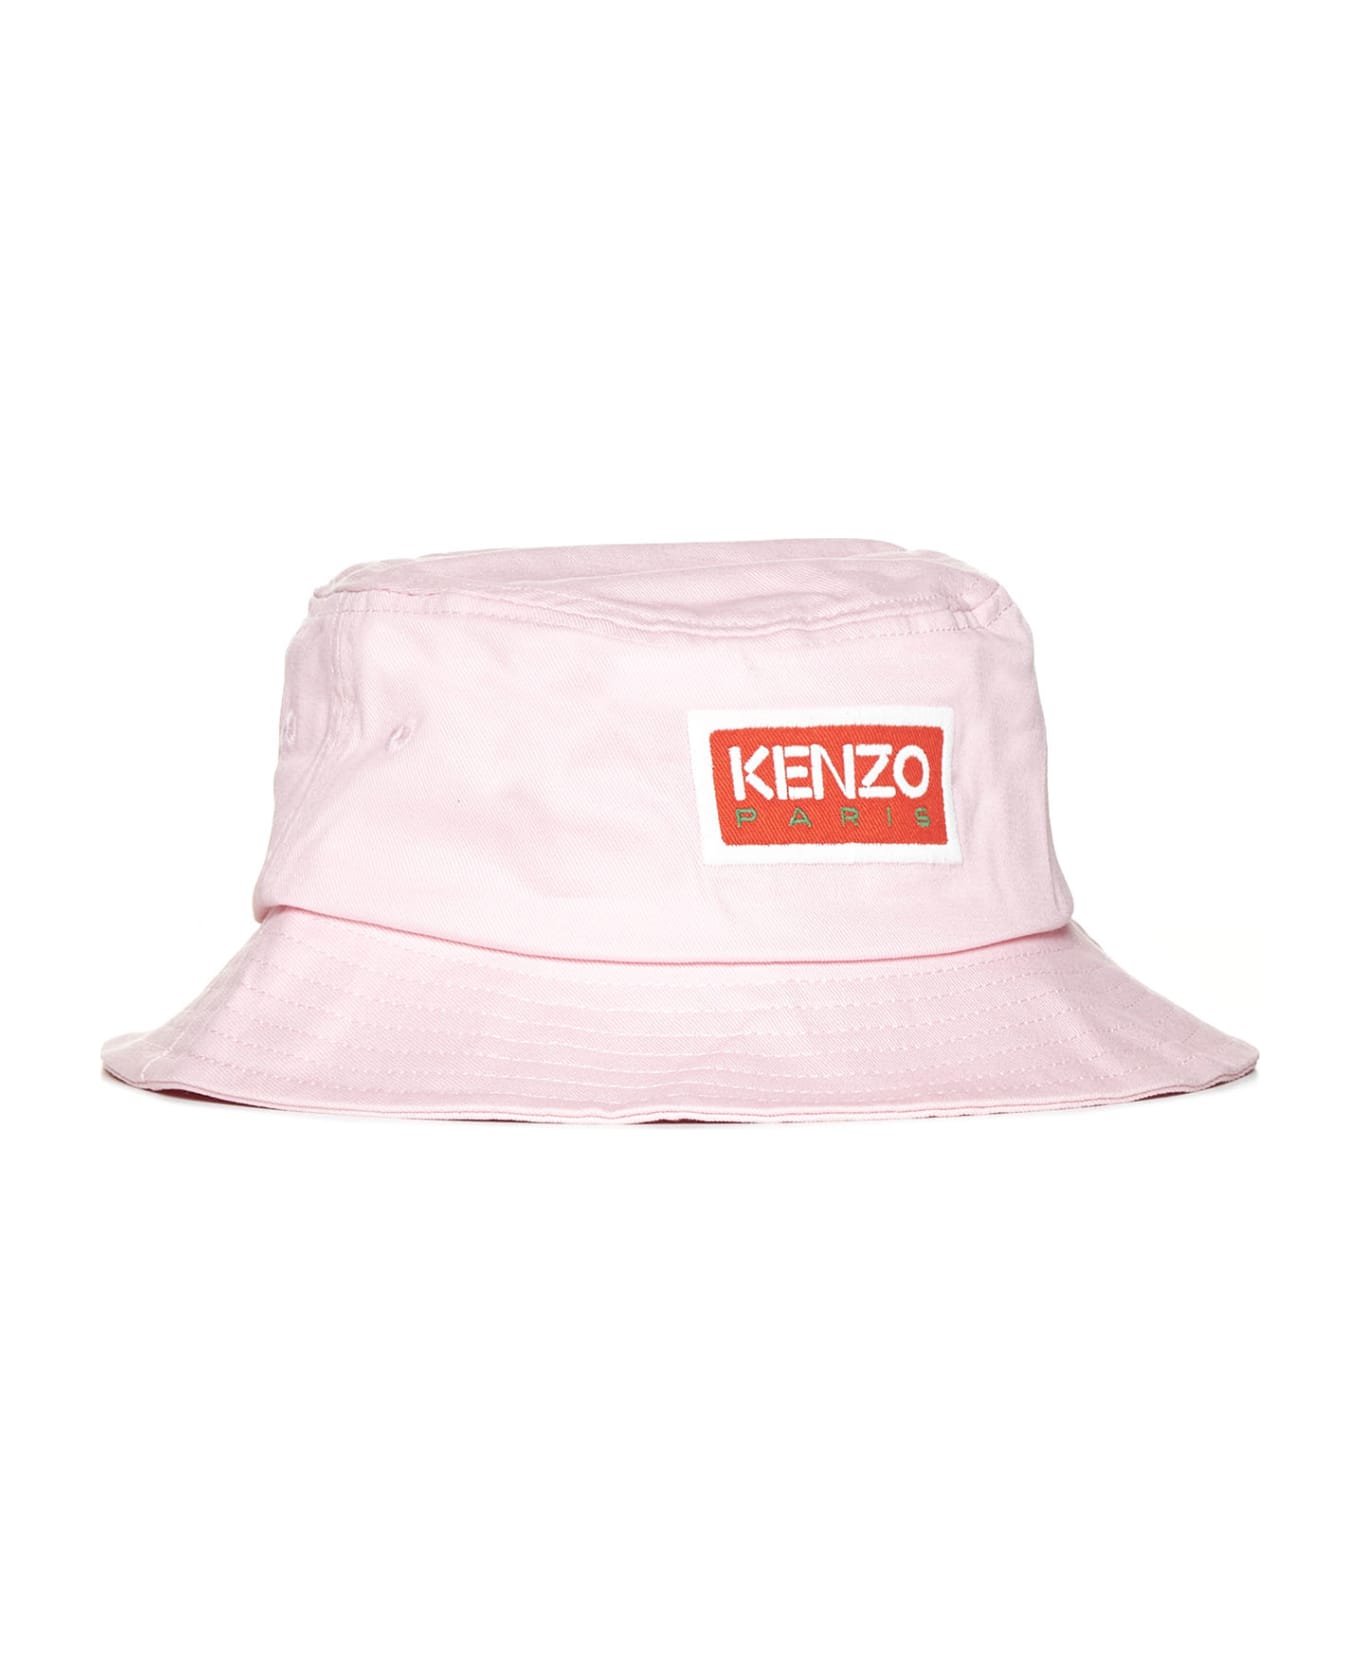 Kenzo Bucket Hat - Faded pink